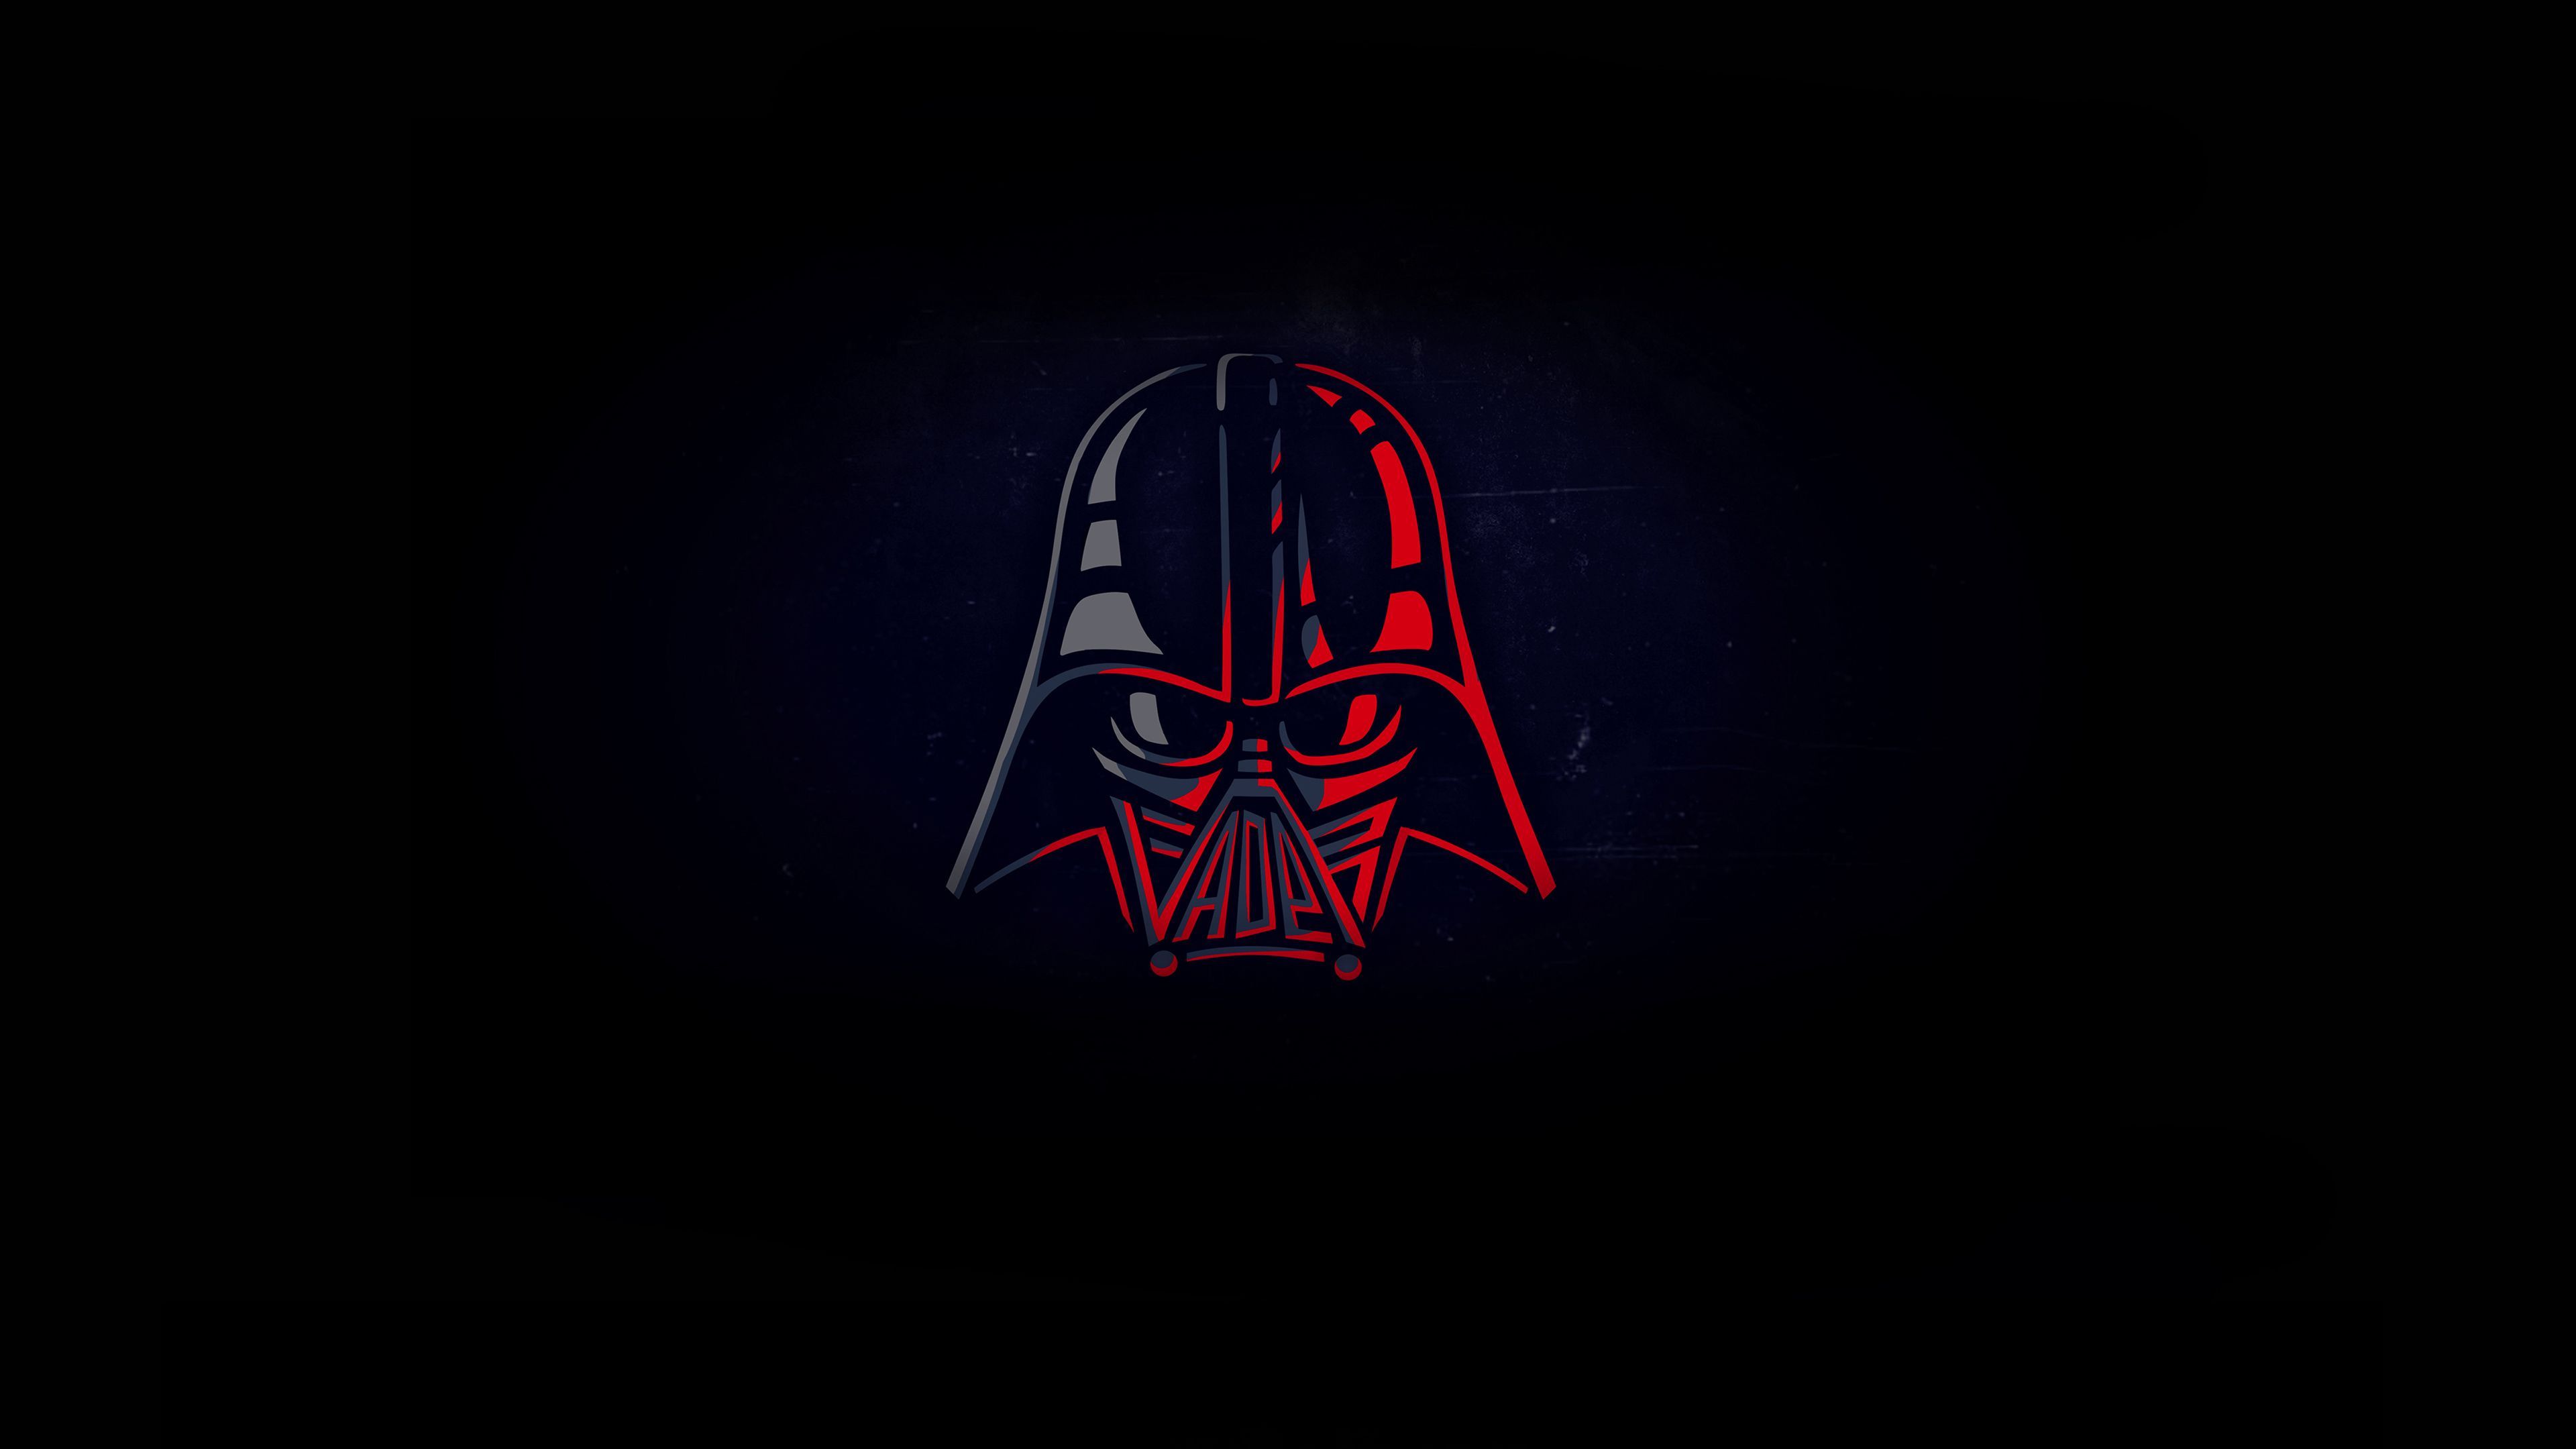 Darth Vader Stormtroopers Star Wars HD 4K Wallpaper 81430